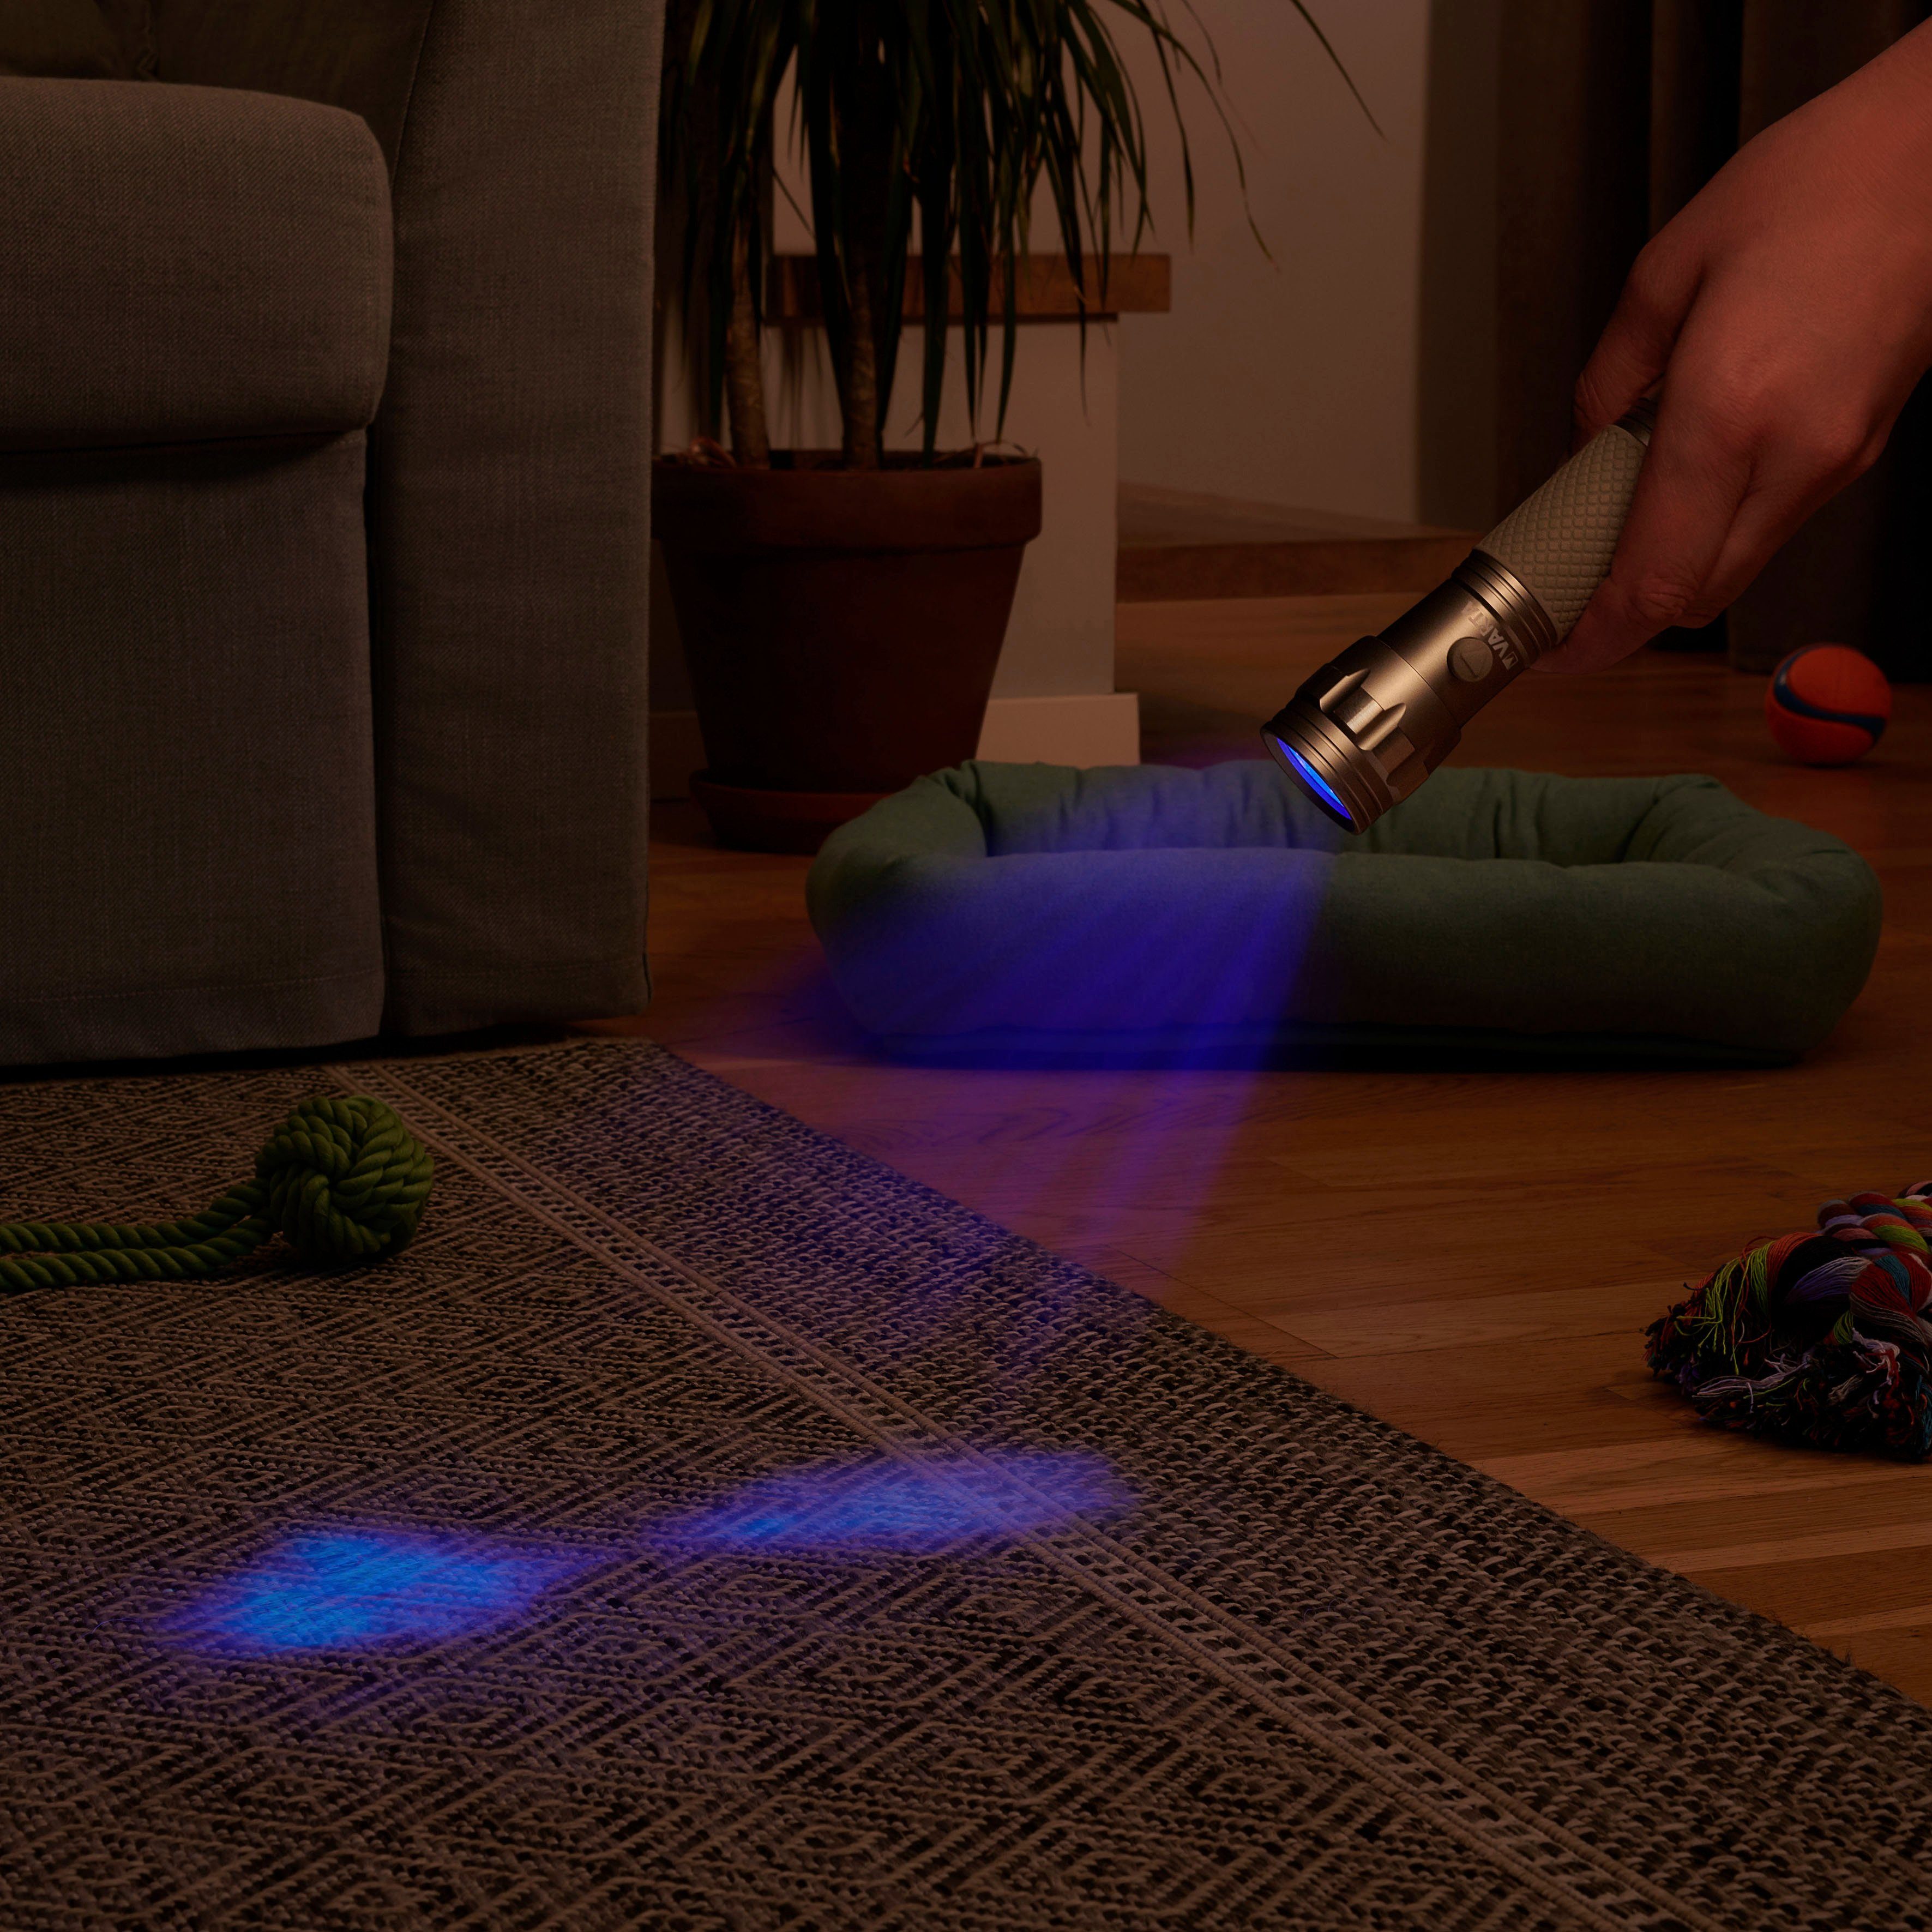 VARTA Taschenlampe UV Licht Hygienehilfe Leuchte (Set), macht Unsichtbares sichtbar mit Schwarzlicht